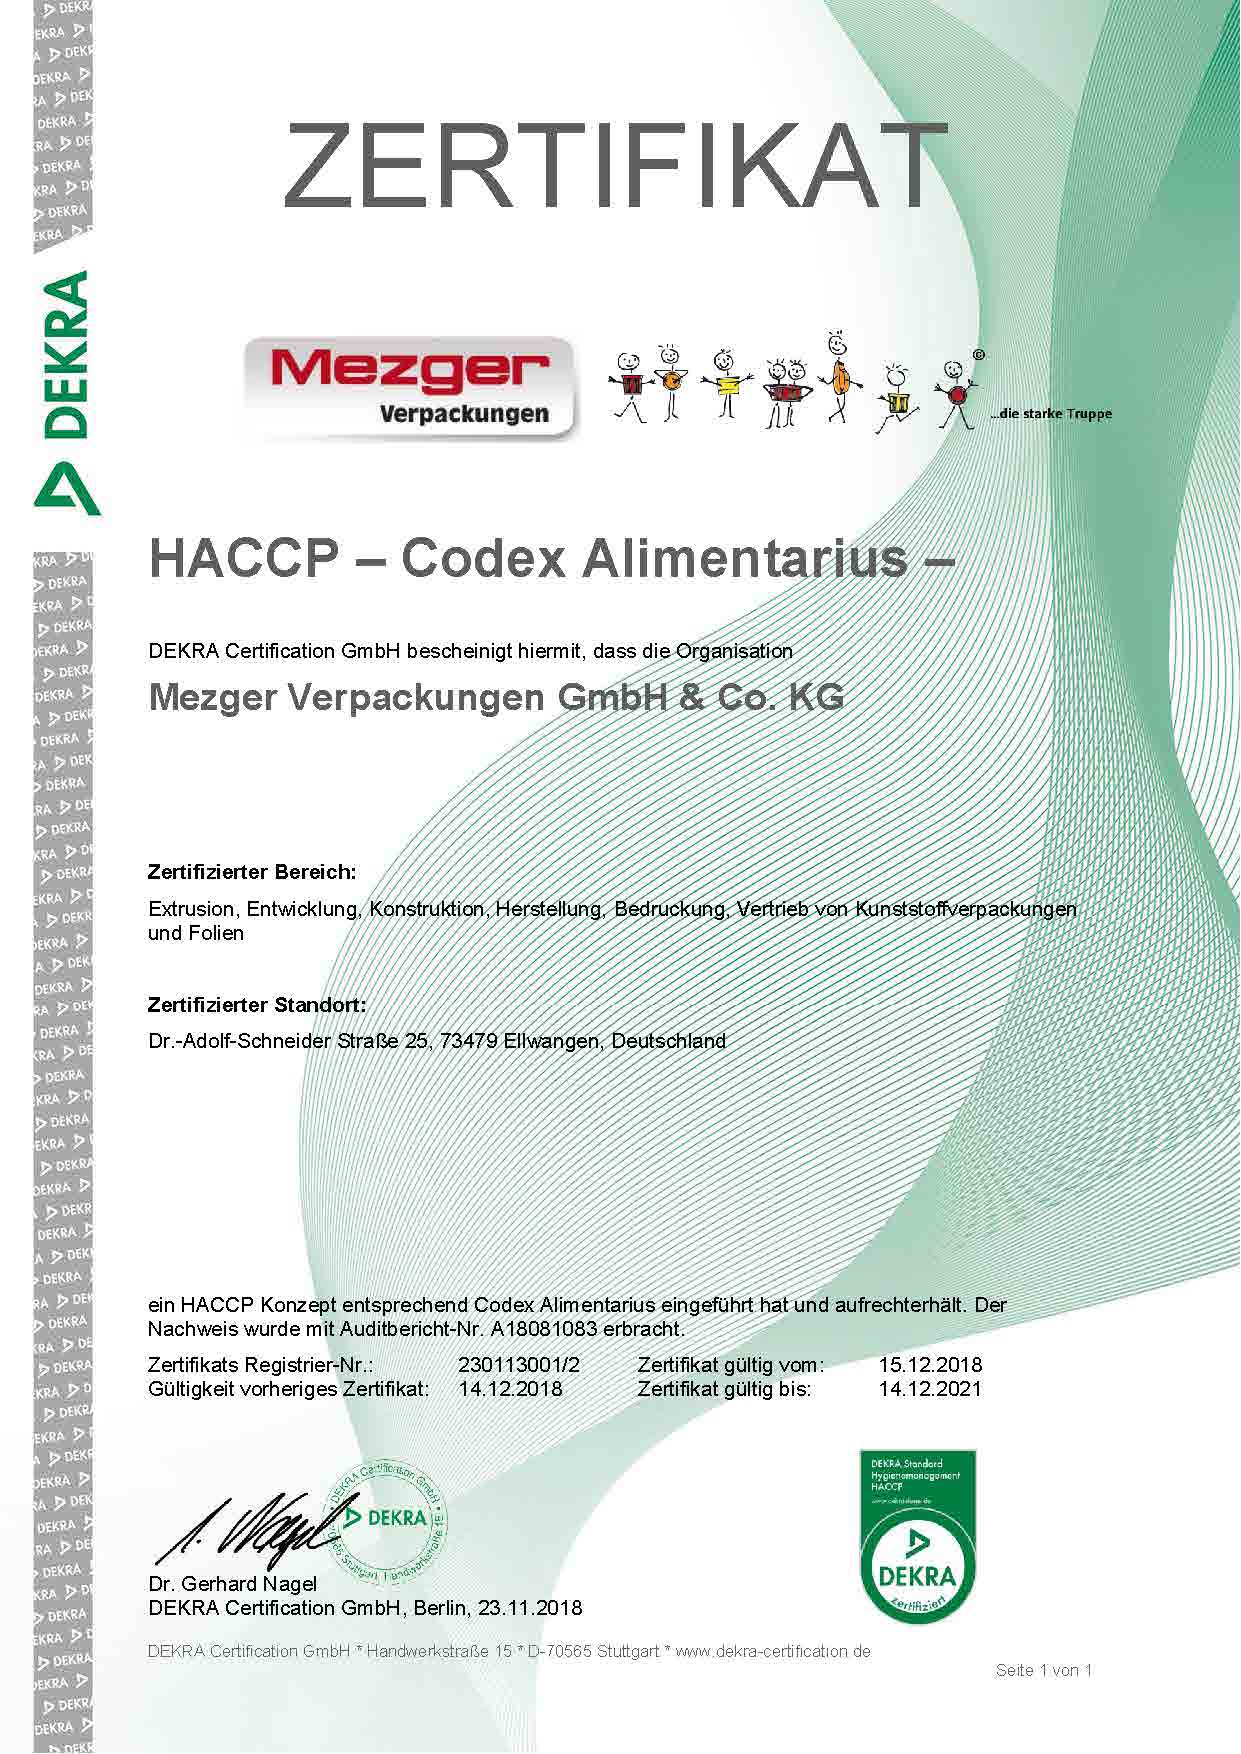 Zertifikat HACCP Re 230113001 2 d